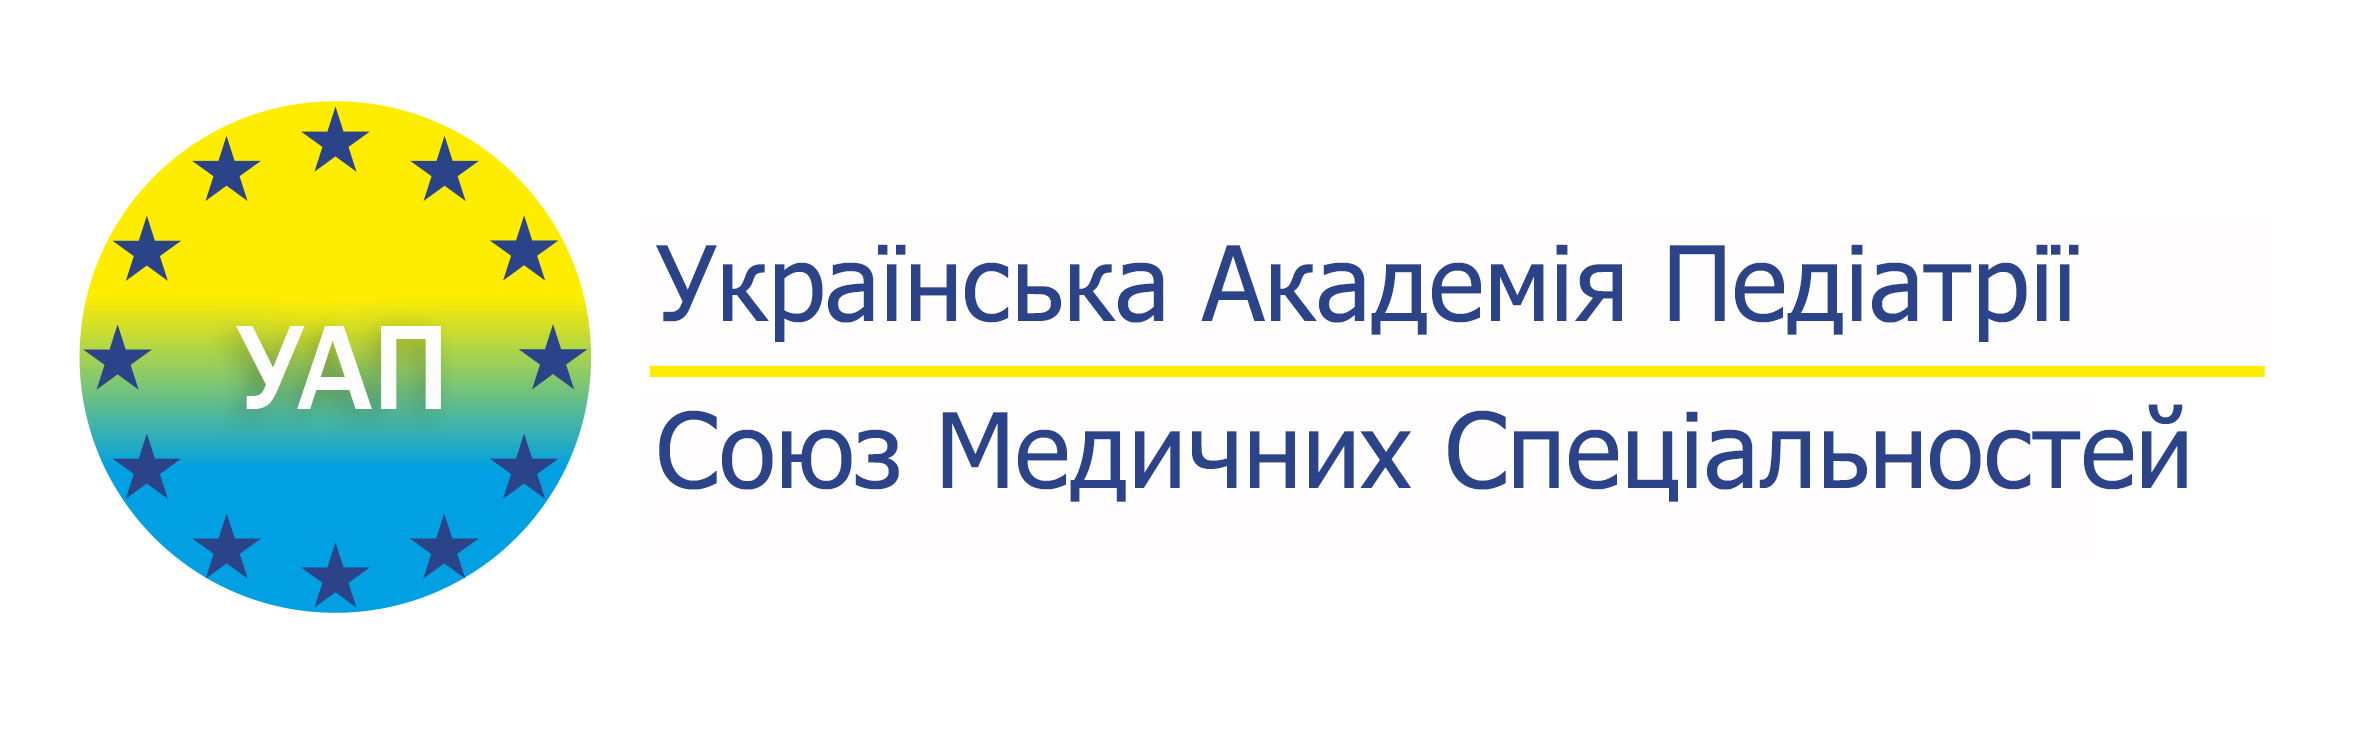 Українська академія Педіатрії - Союз Медичних Спеціальностей